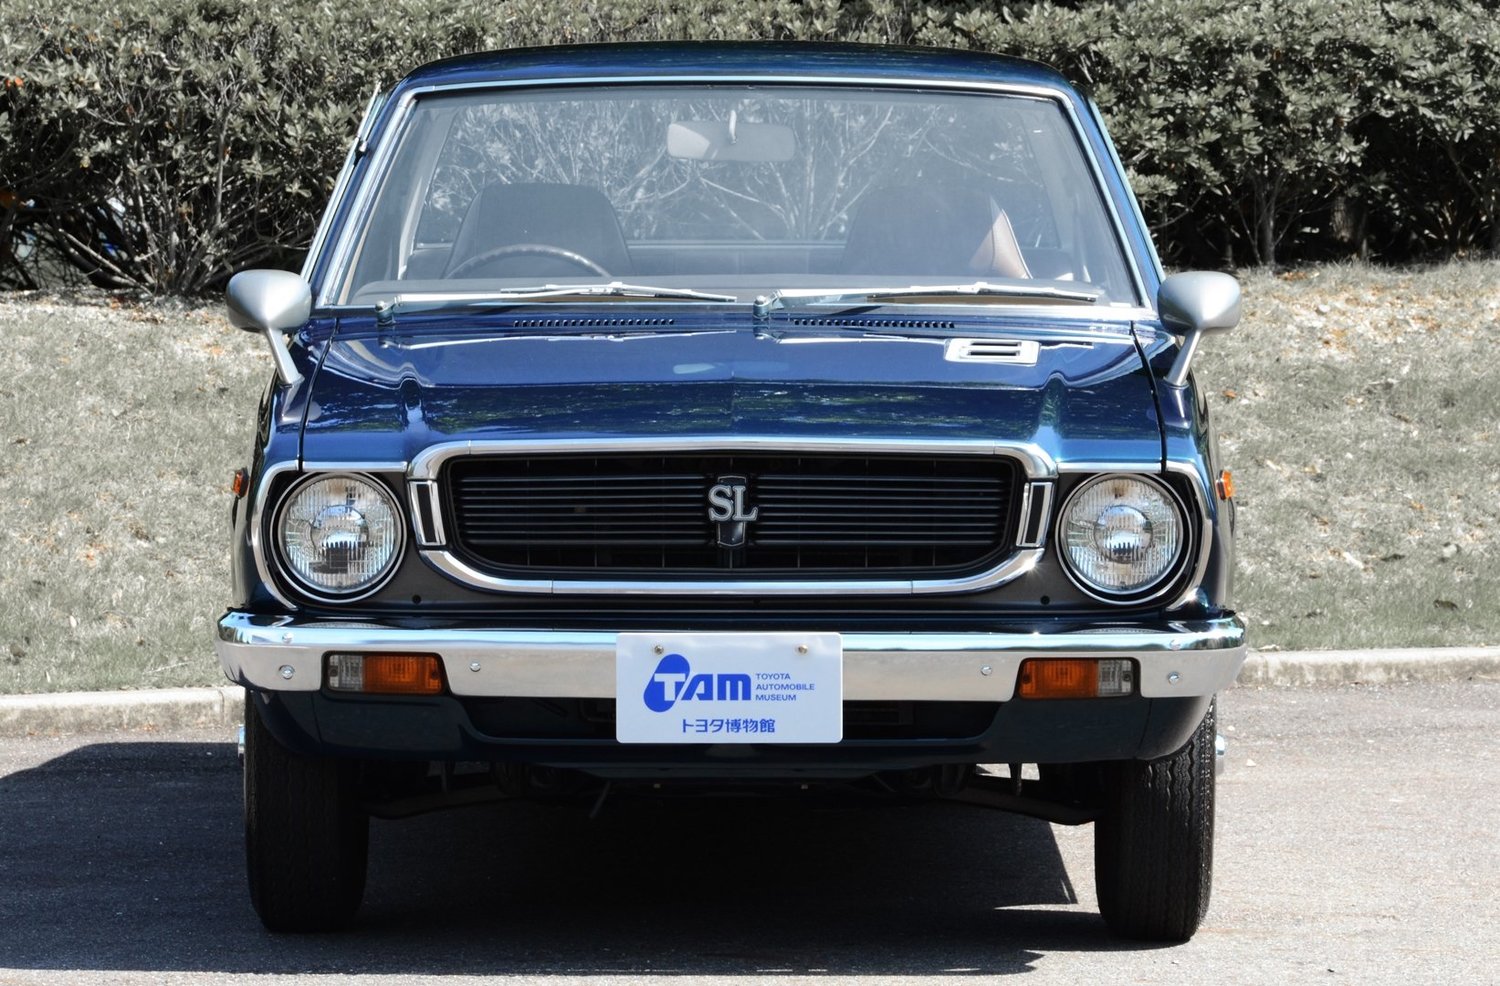 седан Toyota Corolla 1974 - 1979г выпуска модификация 1.2 AT (58 л.с.)